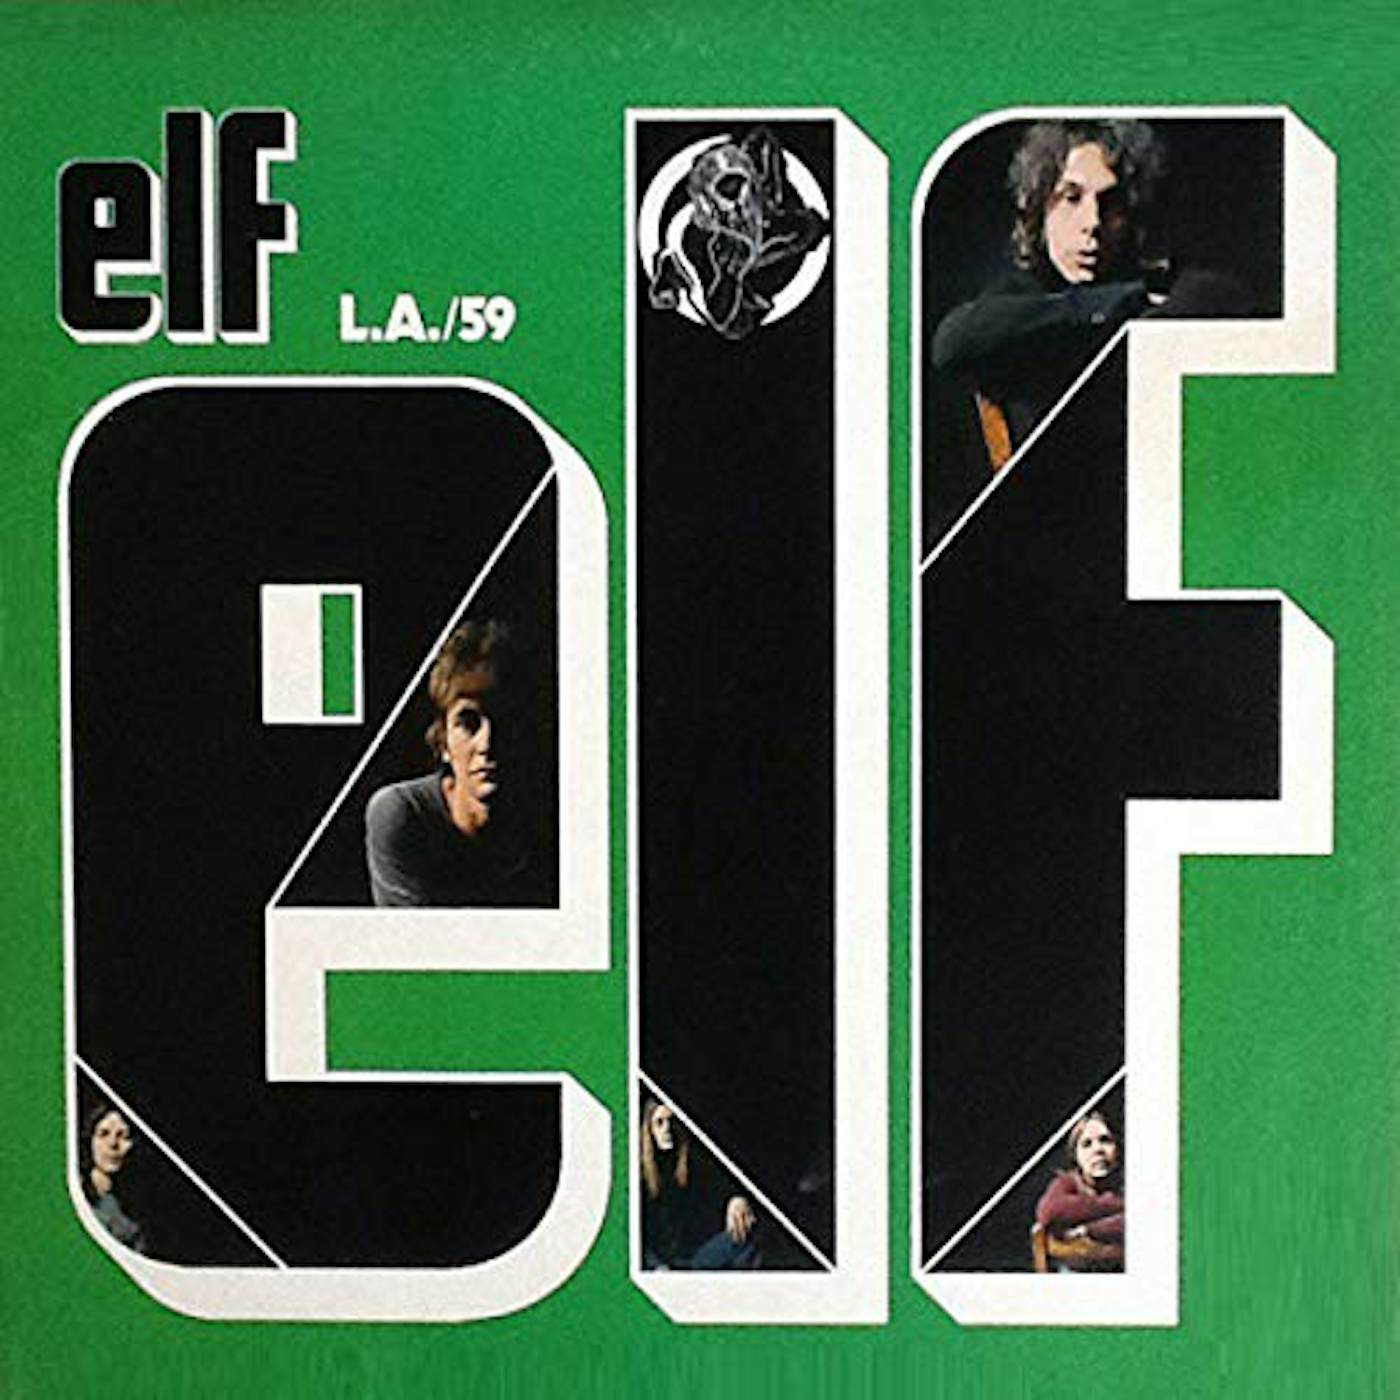 Elf L.A / 59 CD